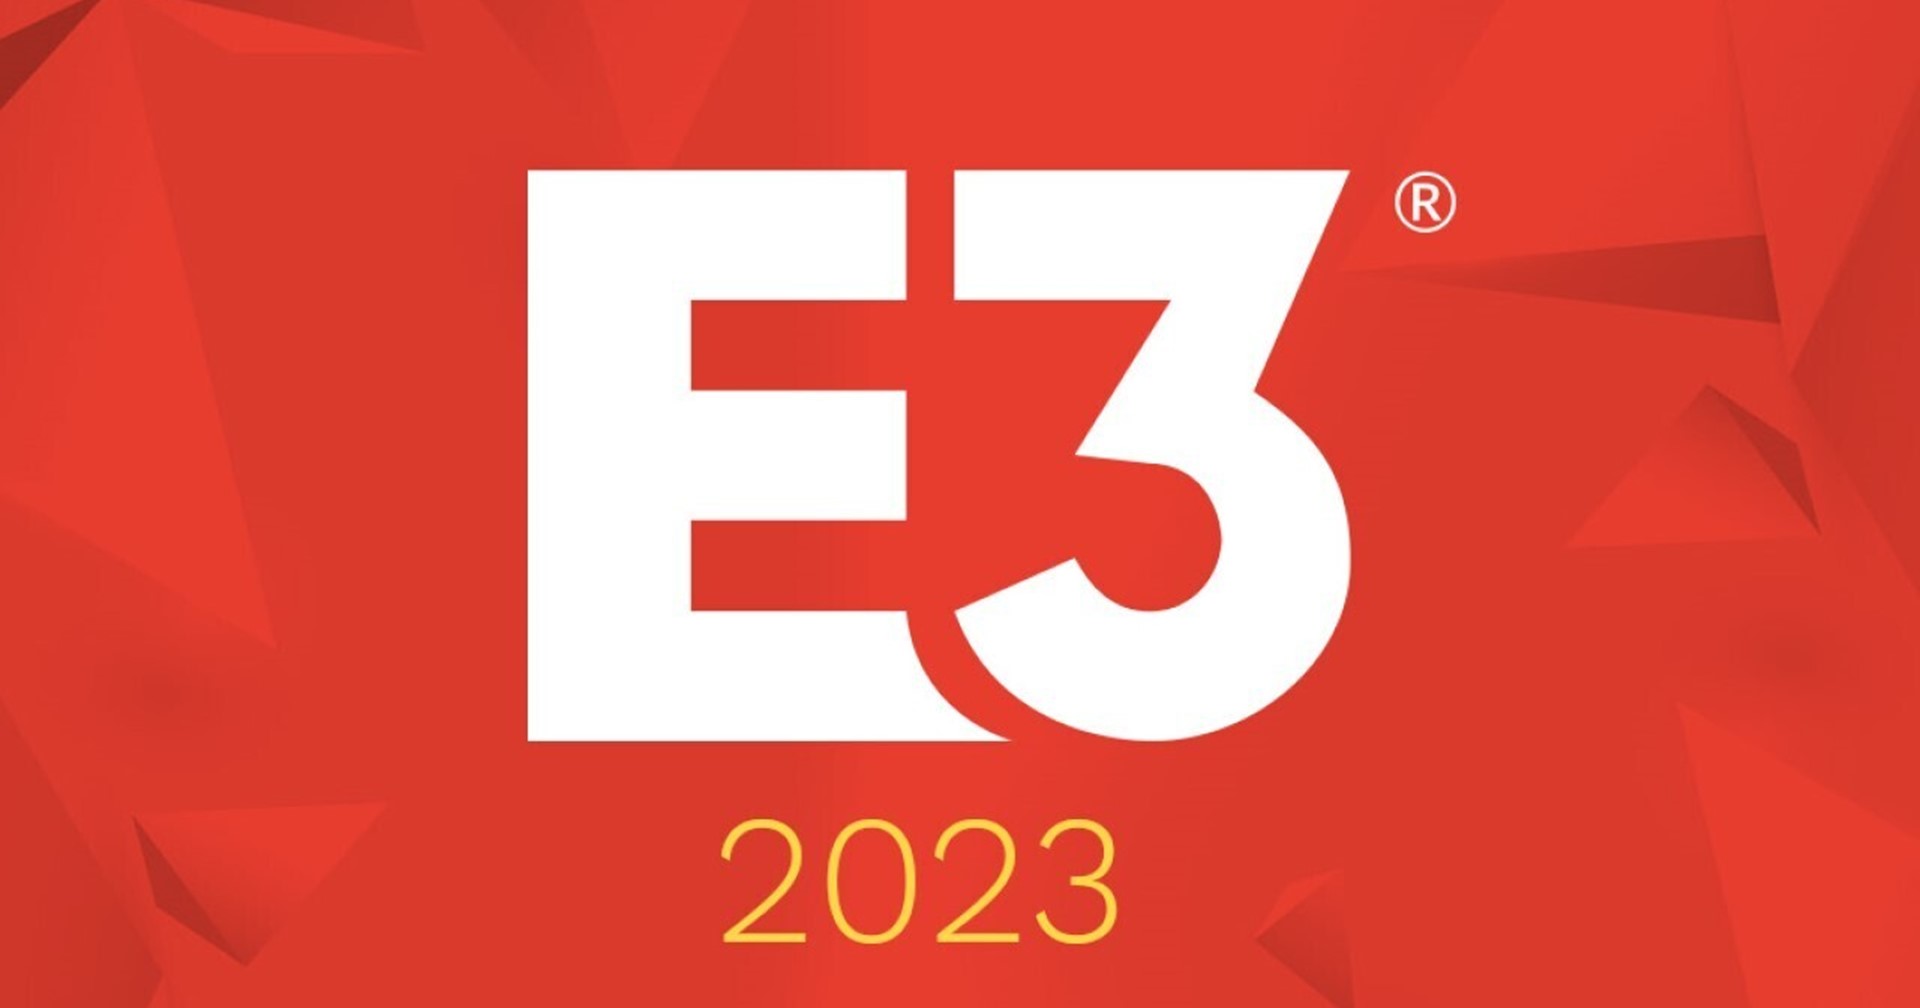 งาน E3 2023 ยังคงมีการจัด แม้ไม่มี 3 ยักษ์ใหญ่มาร่วมงาน